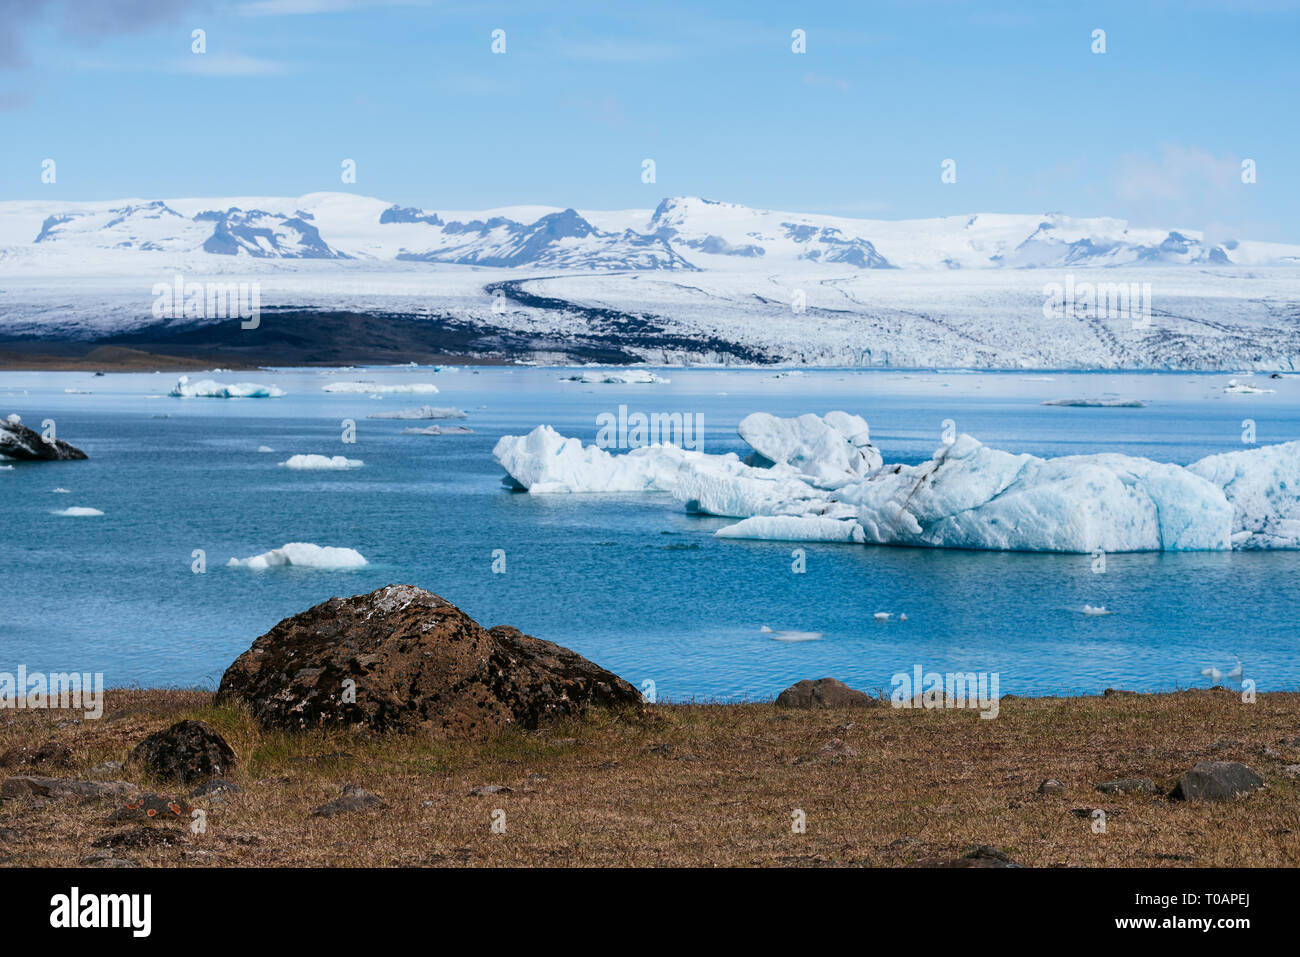 - Jokulsarlon glacial lagoon Glacier et des icebergs dans le sud-est de l'Islande, l'Europe, à proximité du parc national Vatnajokull Banque D'Images